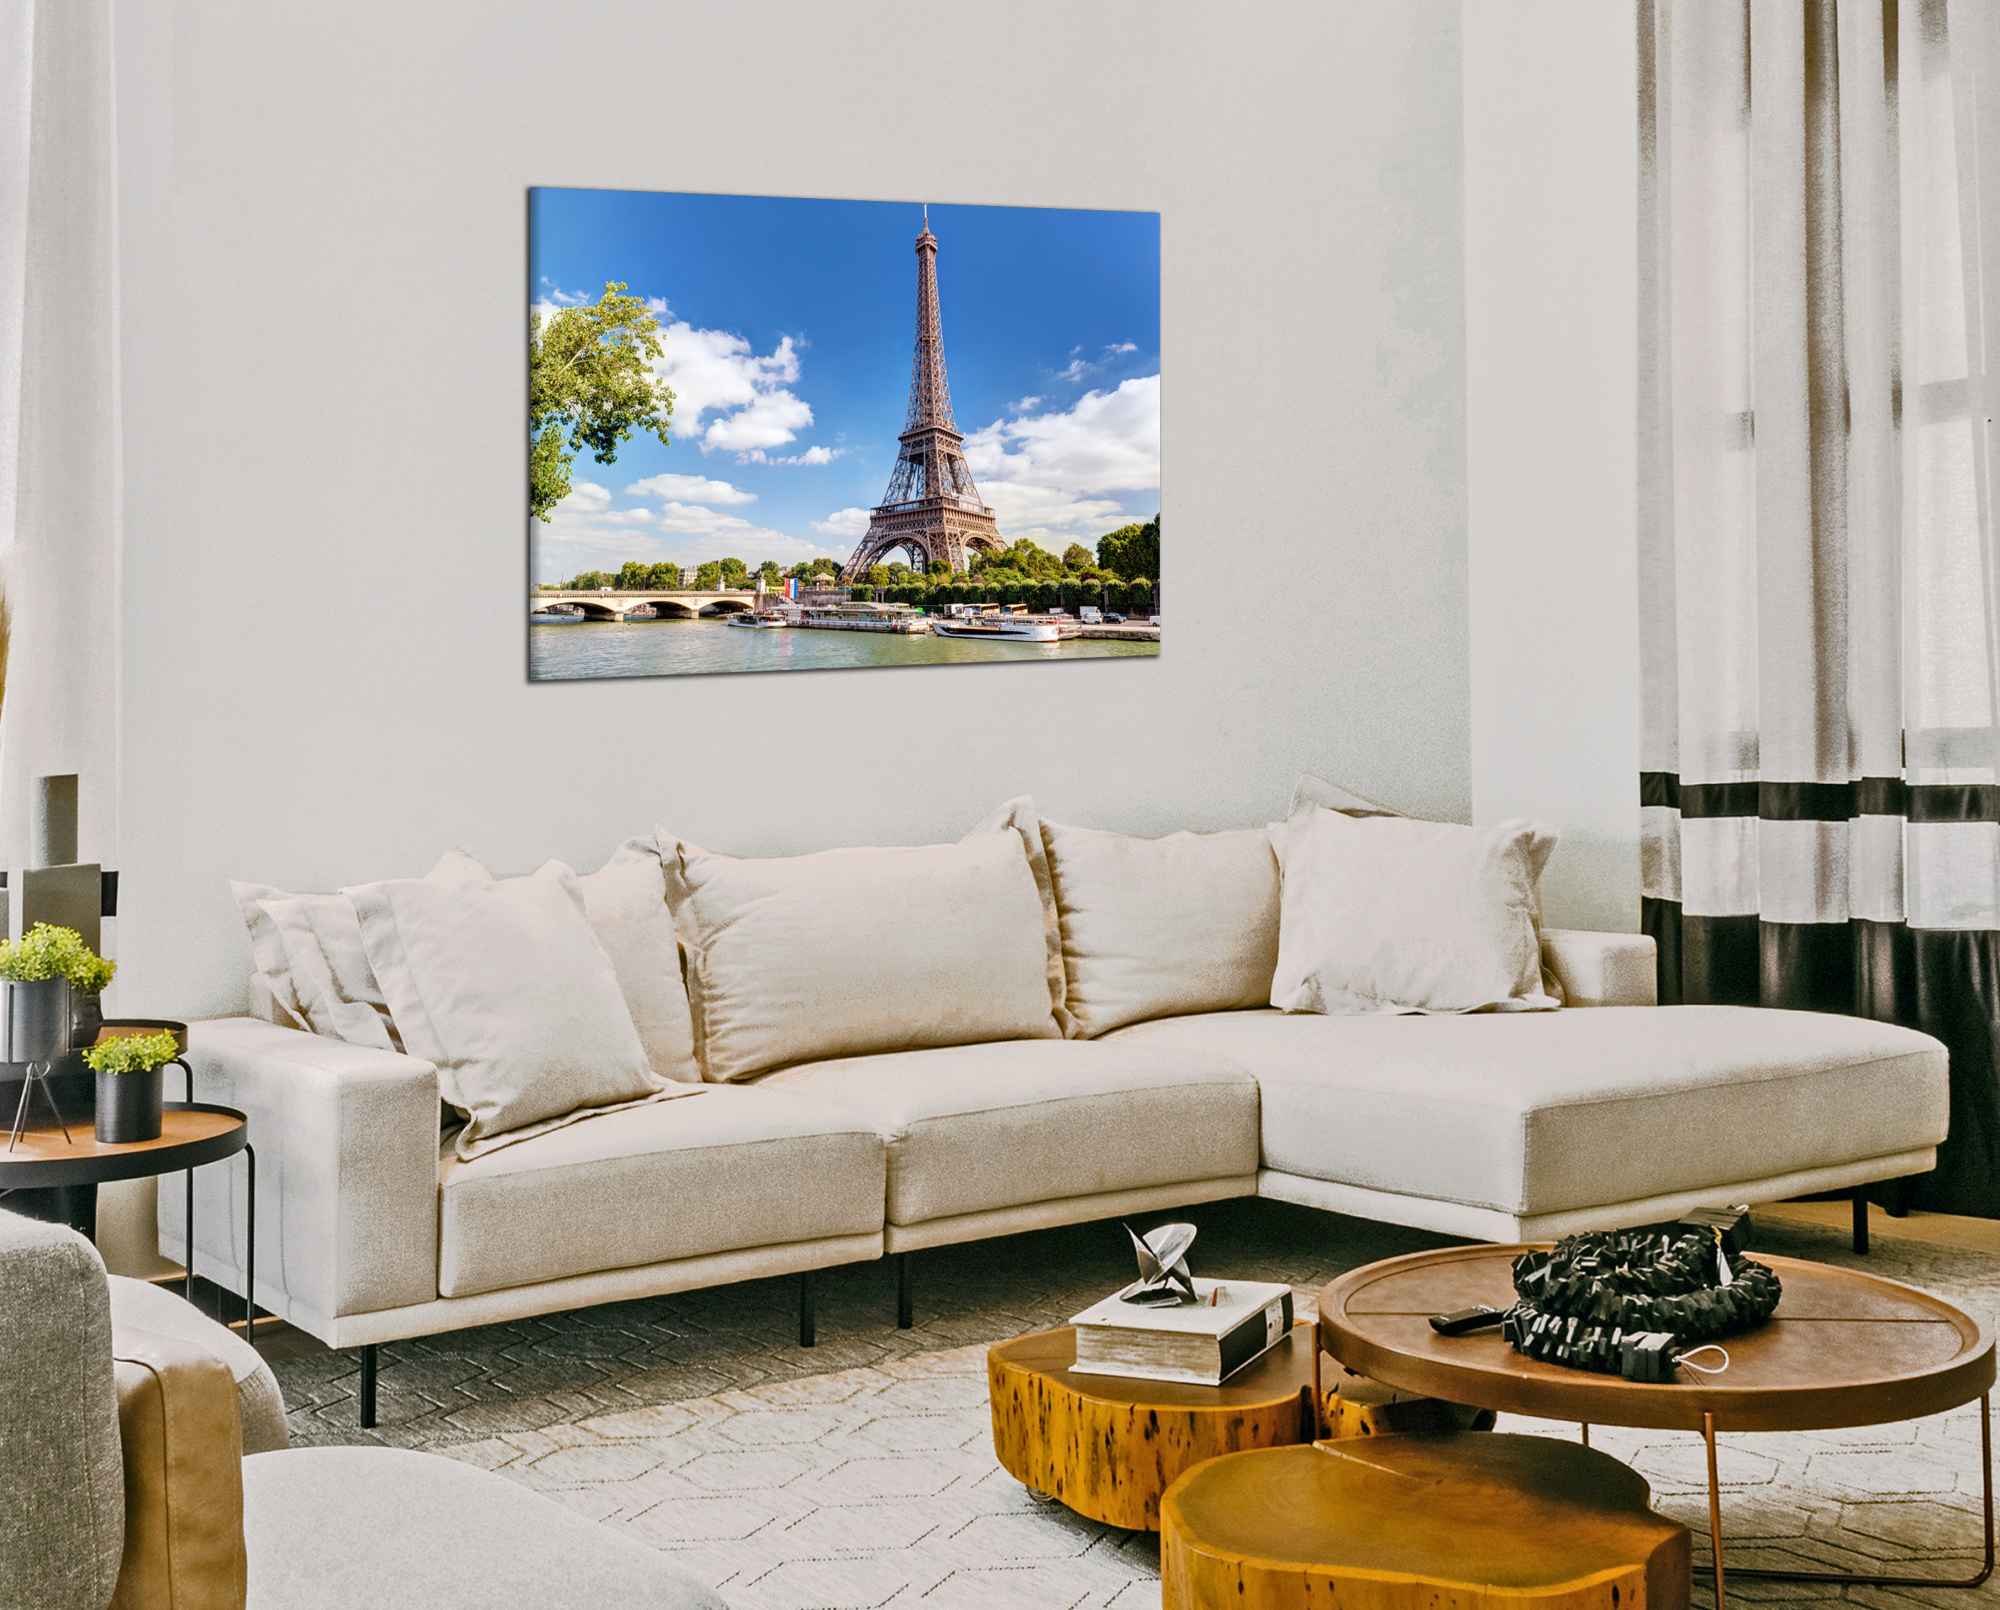 Obdelníkový obraz Eiffelovka a řeka